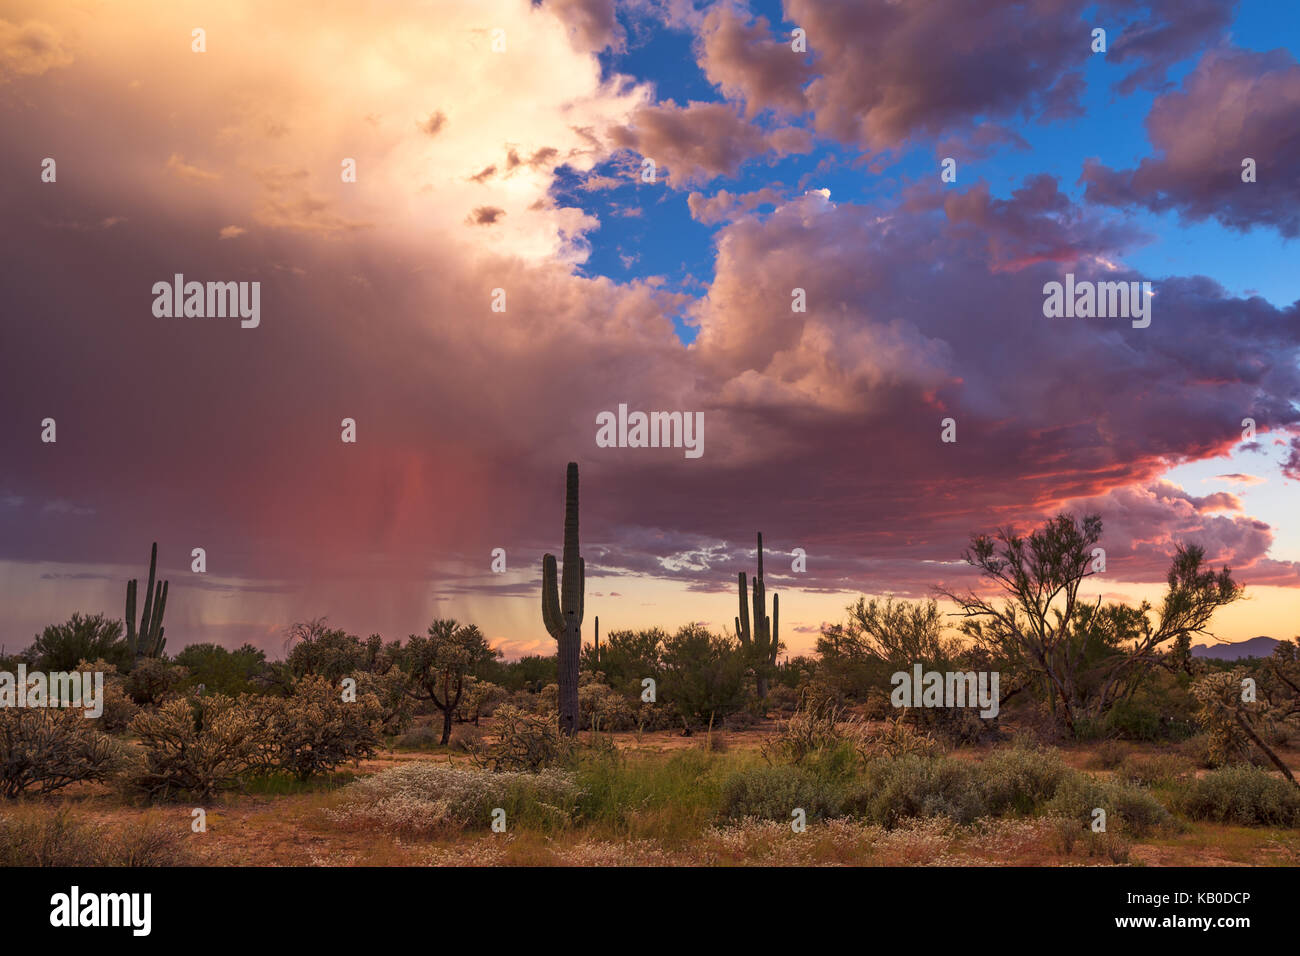 Farbenfrohe Wüstenlandschaft in Arizona bei Sonnenuntergang mit Kakteen und einem Monsunsturm Stockfoto